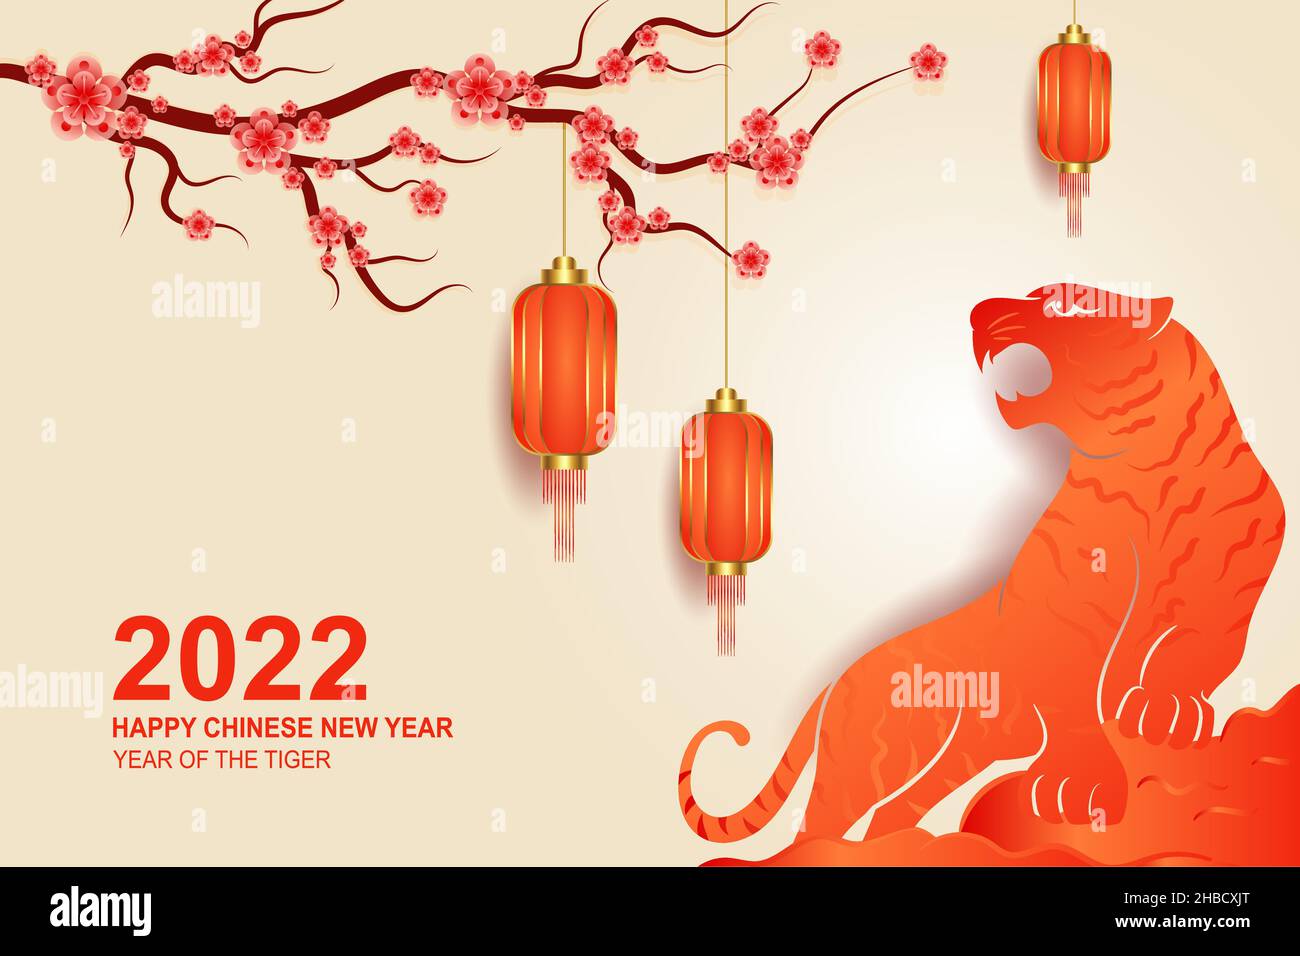 Joyeux fond chinois nouvel an 2022 avec fleurs Sakura, lanterne et illustration de tigre Illustration de Vecteur